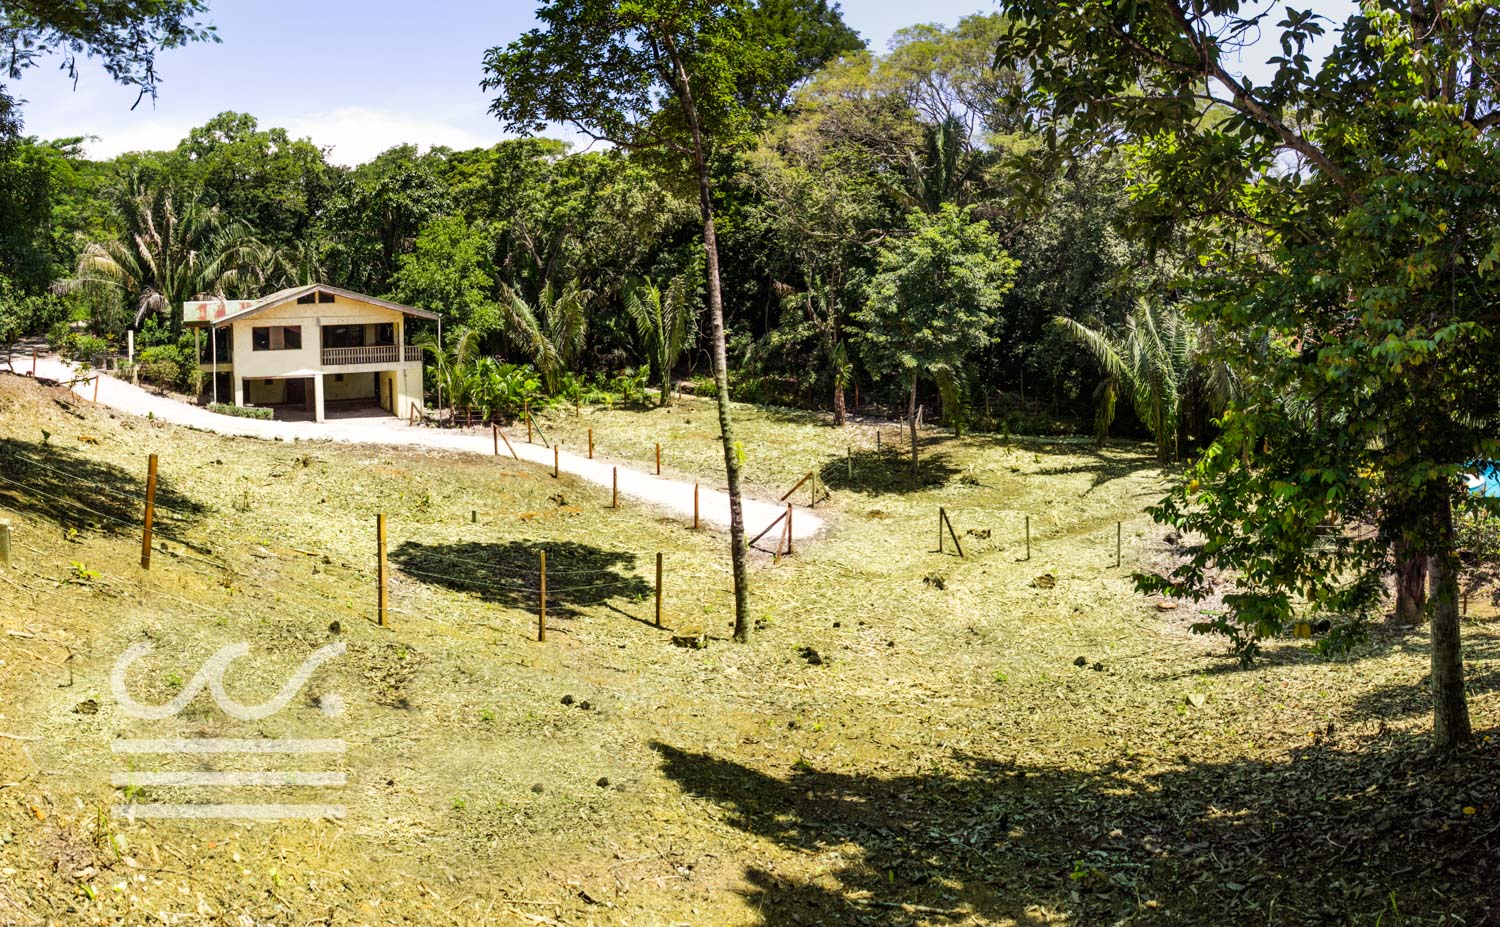 Villas-Pelada-Wanderust-Real-Estate-Nosara-Costa-Rica-2.jpg